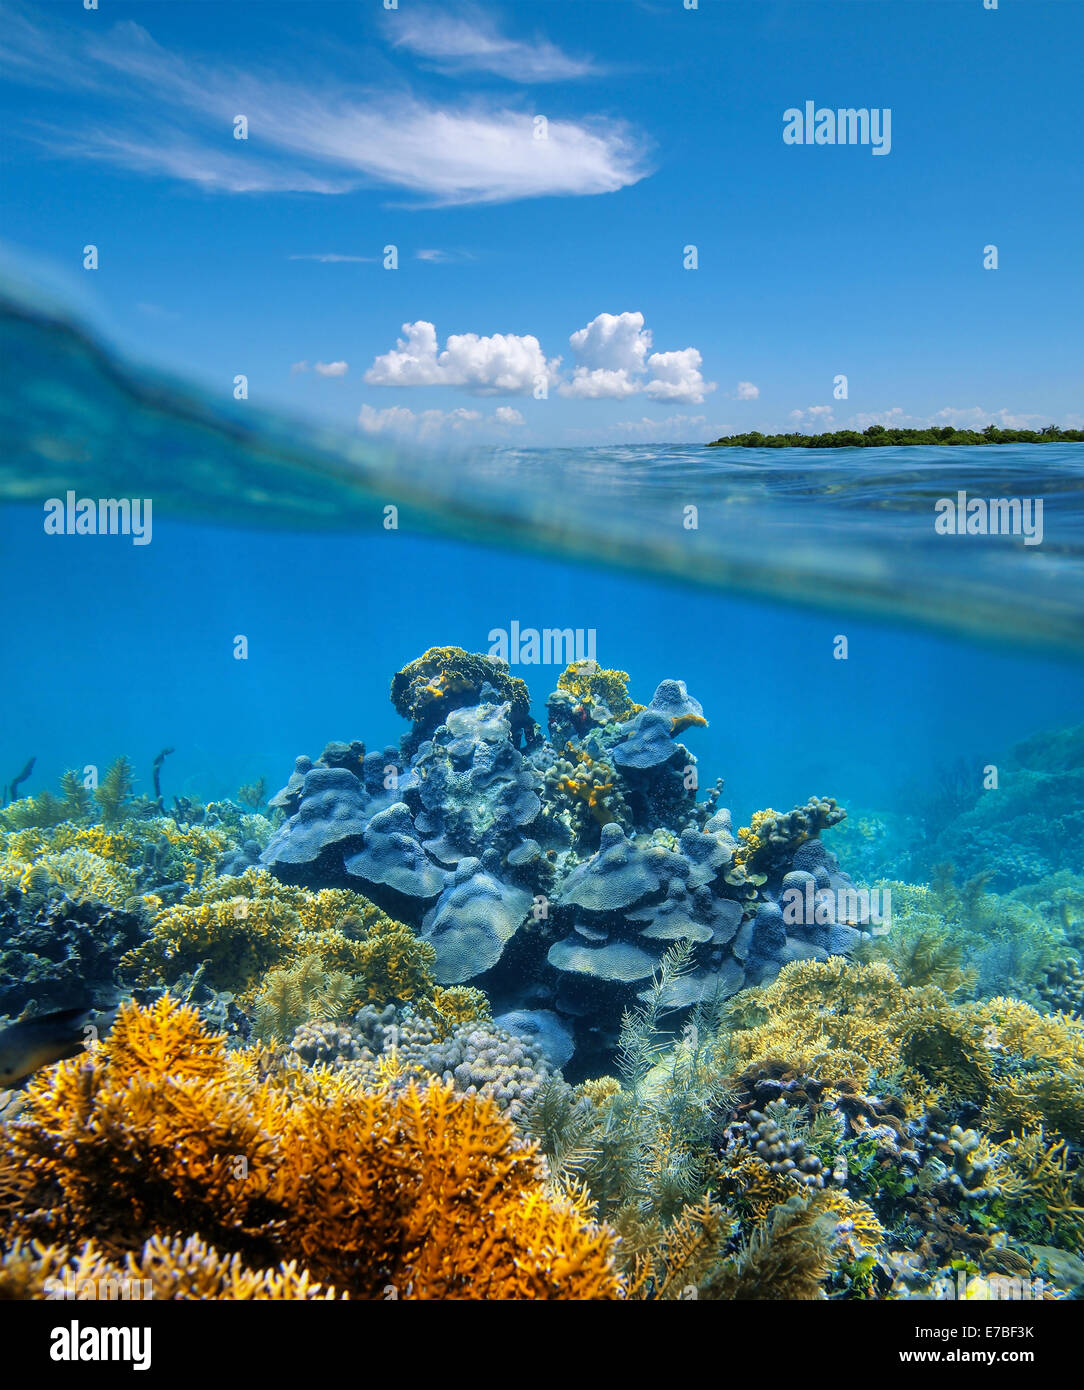 Plus de sous-diviser l'affichage dans la mer des Caraïbes avec un récif corallien sain underwater Banque D'Images